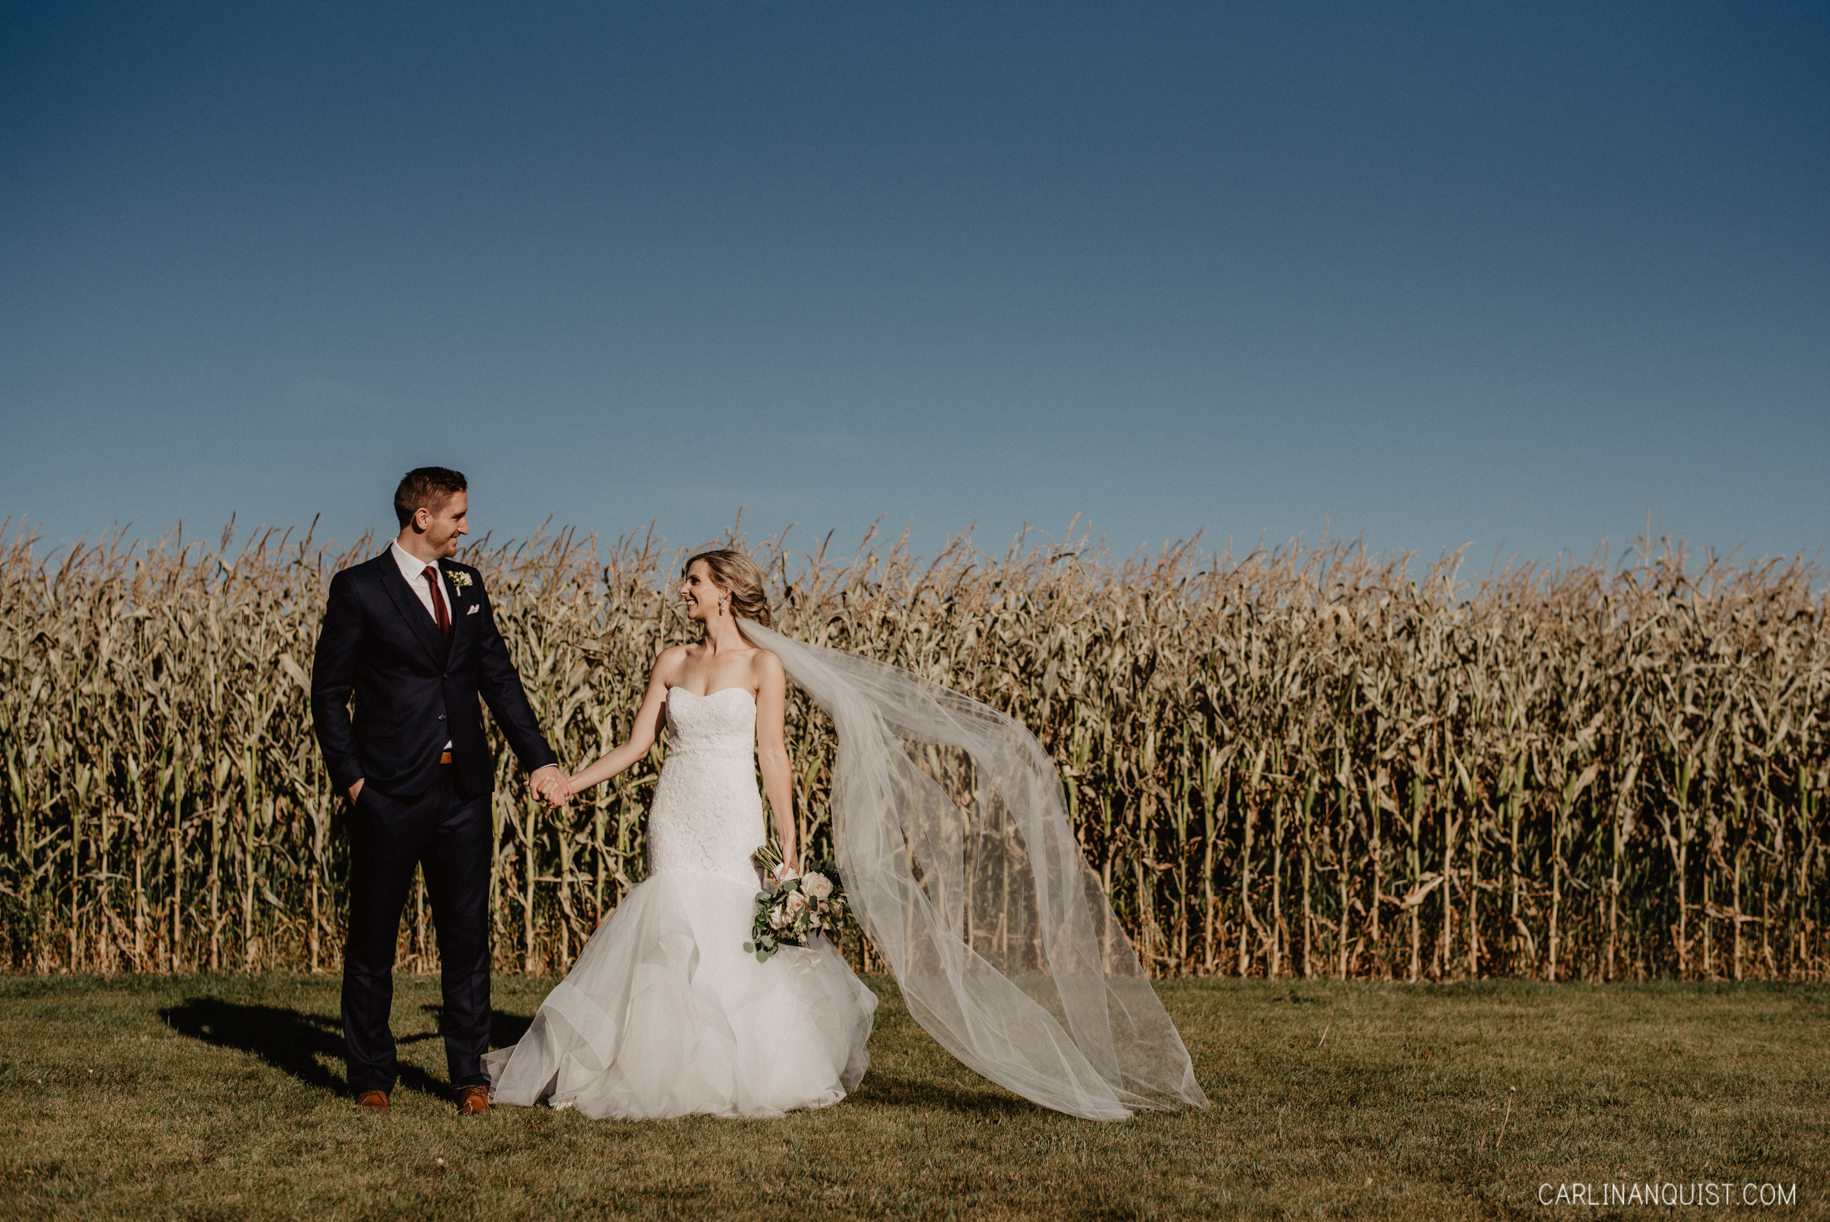 Bride & Groom Portraits in front of Corn Field